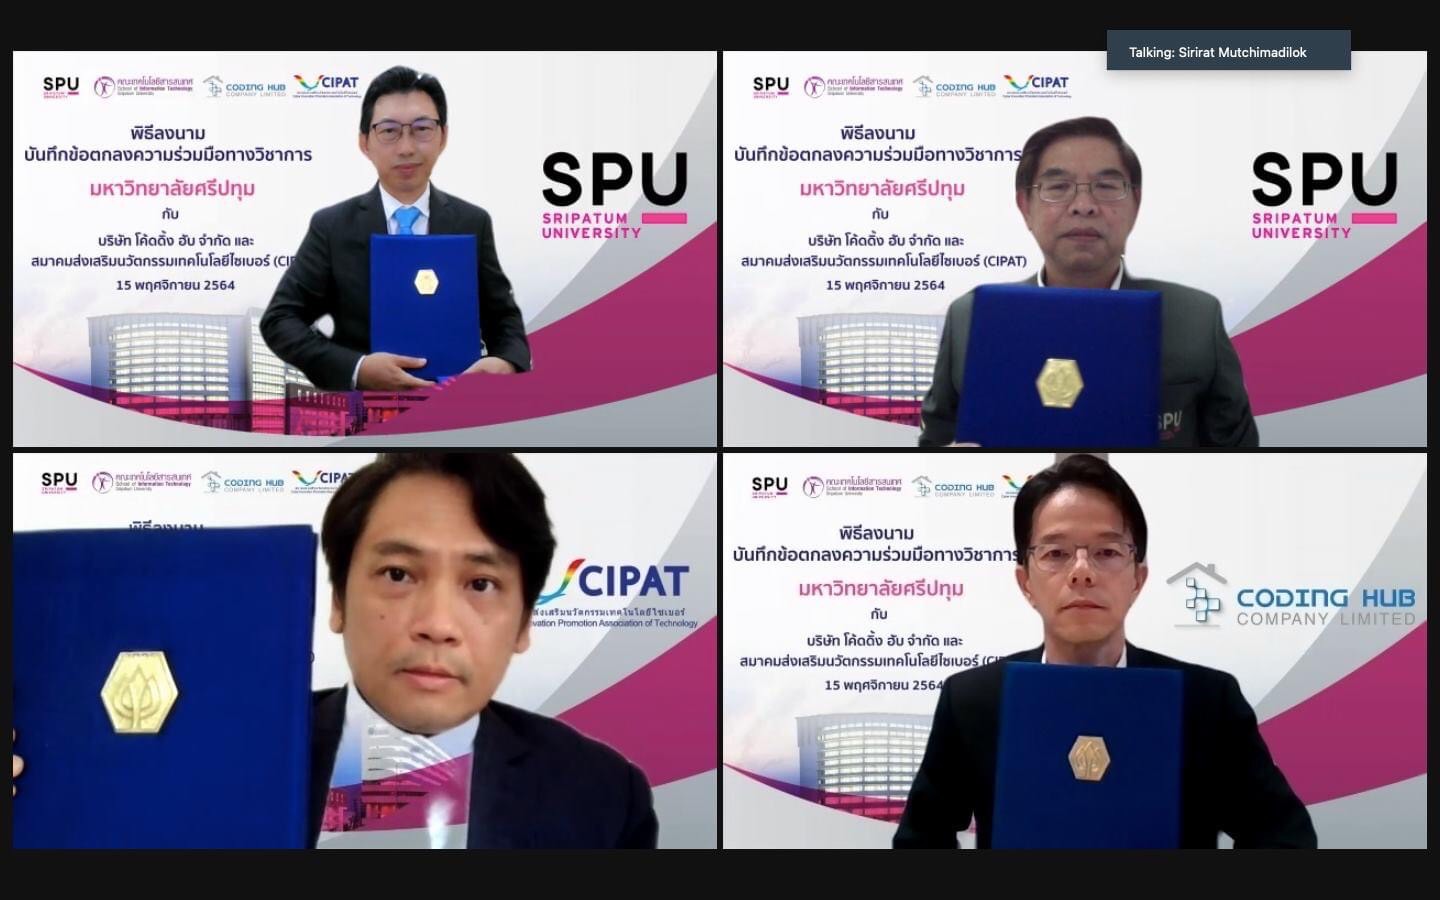 ความร่วมมือ CIPAT กับ มหาวิทยาลัยศรีปทุม